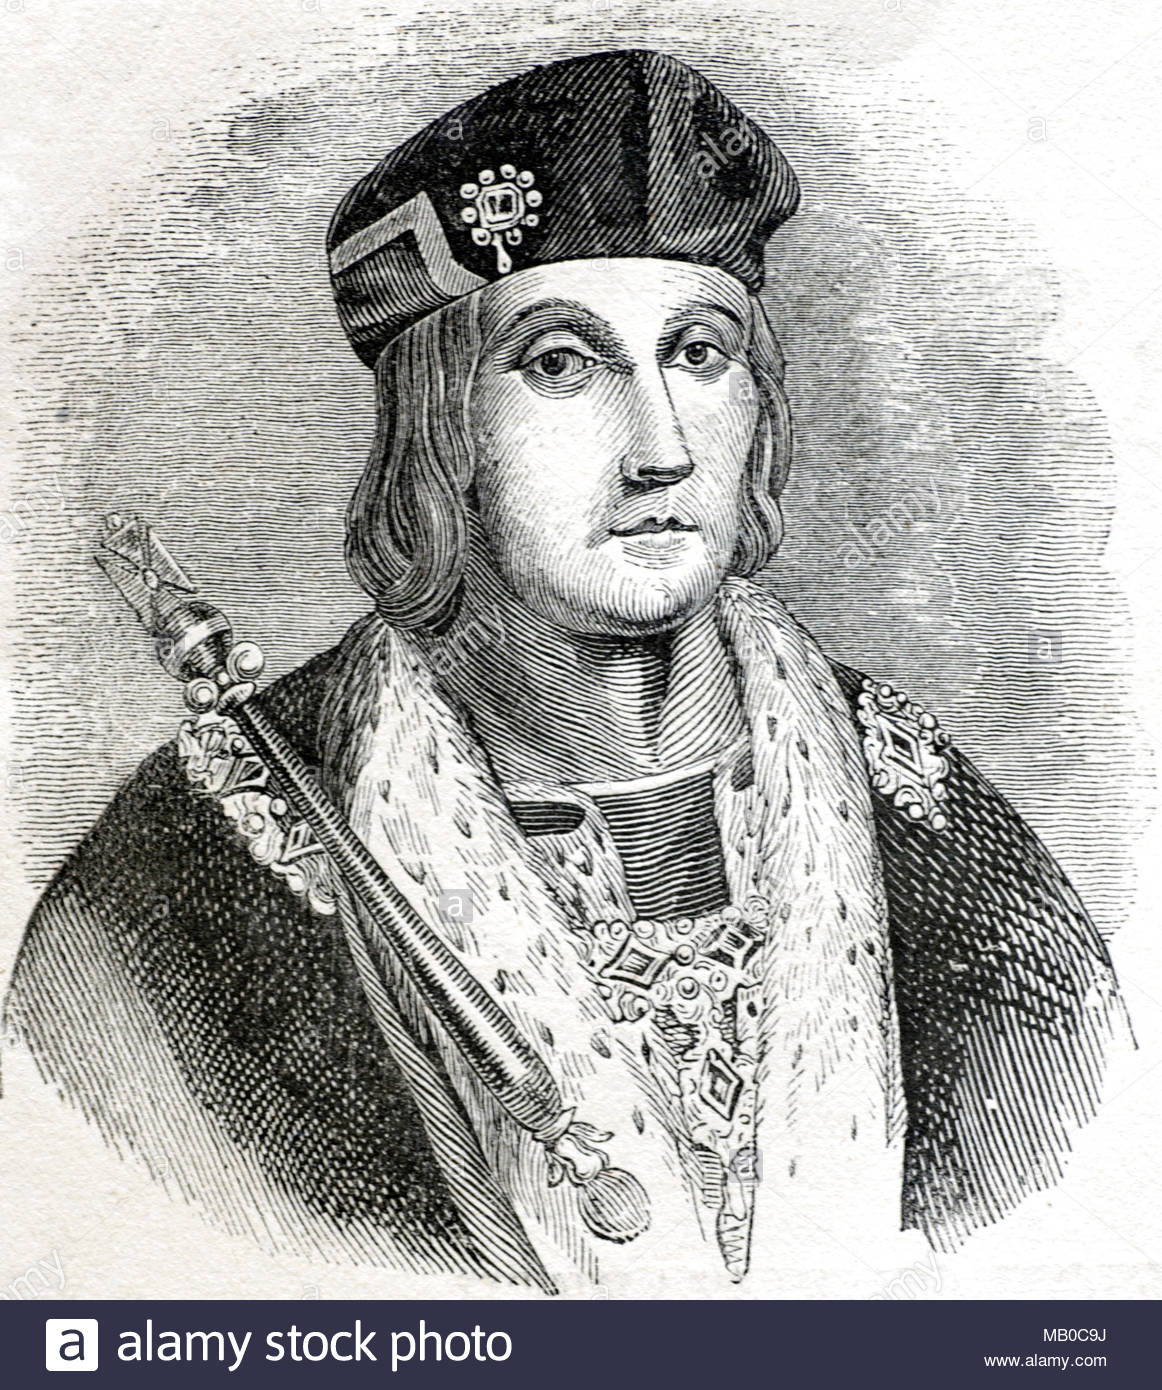 Le roi Henry VII, 1457 - 1509, a été roi d'Angleterre et Seigneur d'Irlande à partir de 1485 jusqu'à sa mort en 1509, premier monarque de la maison de Tudor, meubles anciens de l'illustration vers 1860 Banque D'Images